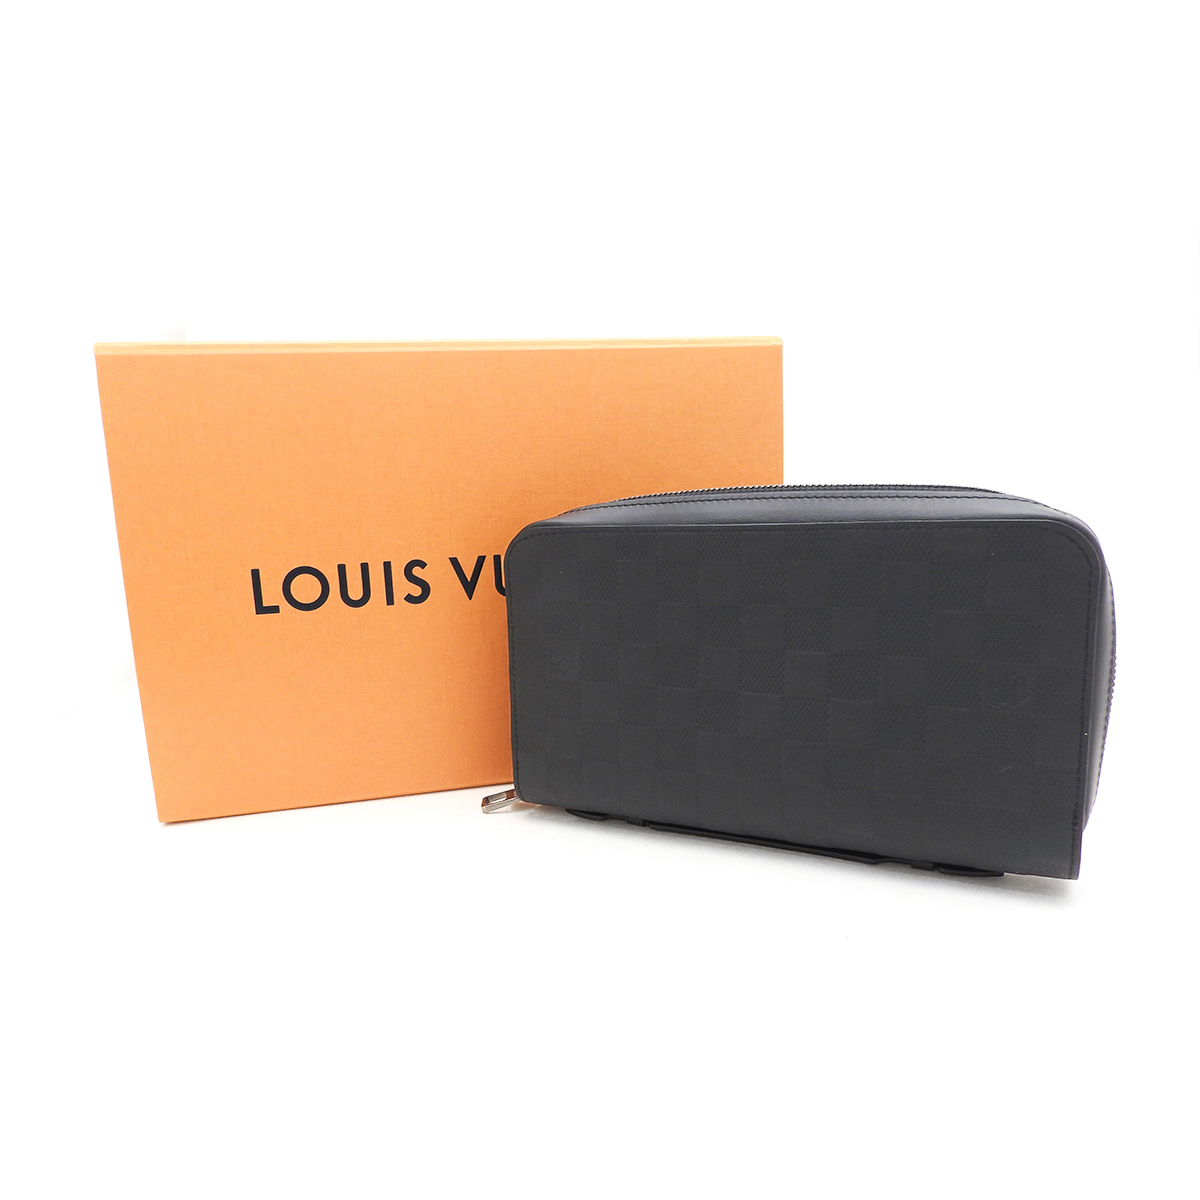 ルイヴィトン(Louis Vuitton) ジッピーXL N61254 ダミエアンフィニ Sランク ブラック